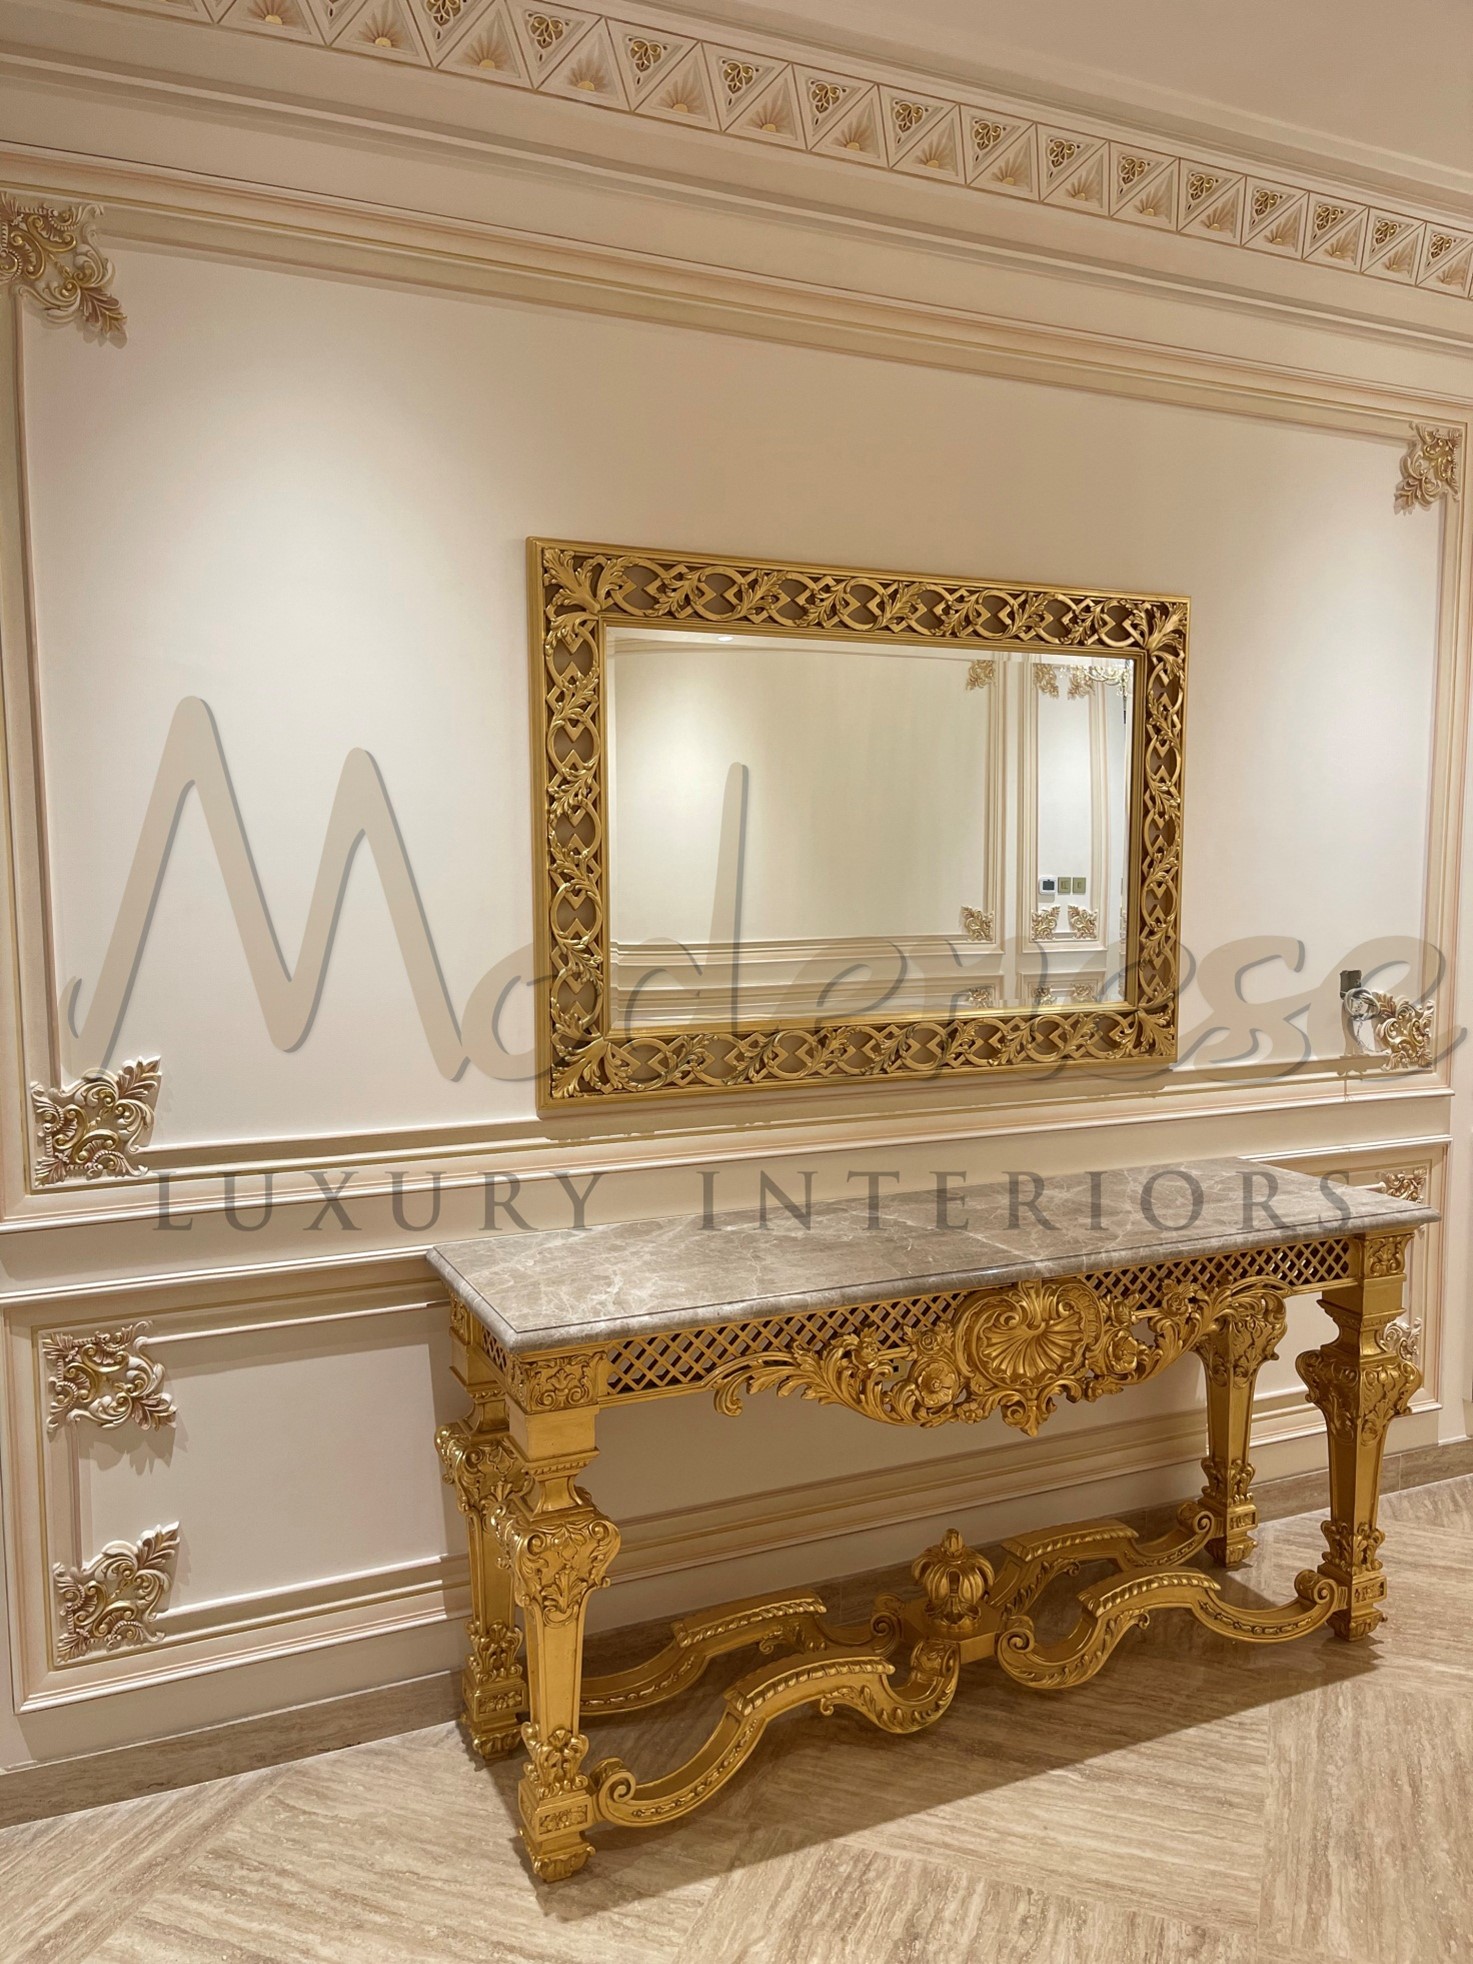 Most opulent interior design firm in the UAE: TOP UAE INTERIOR DESIGN COMPANY MODENESE GASTONE LUXURY INTERIORS